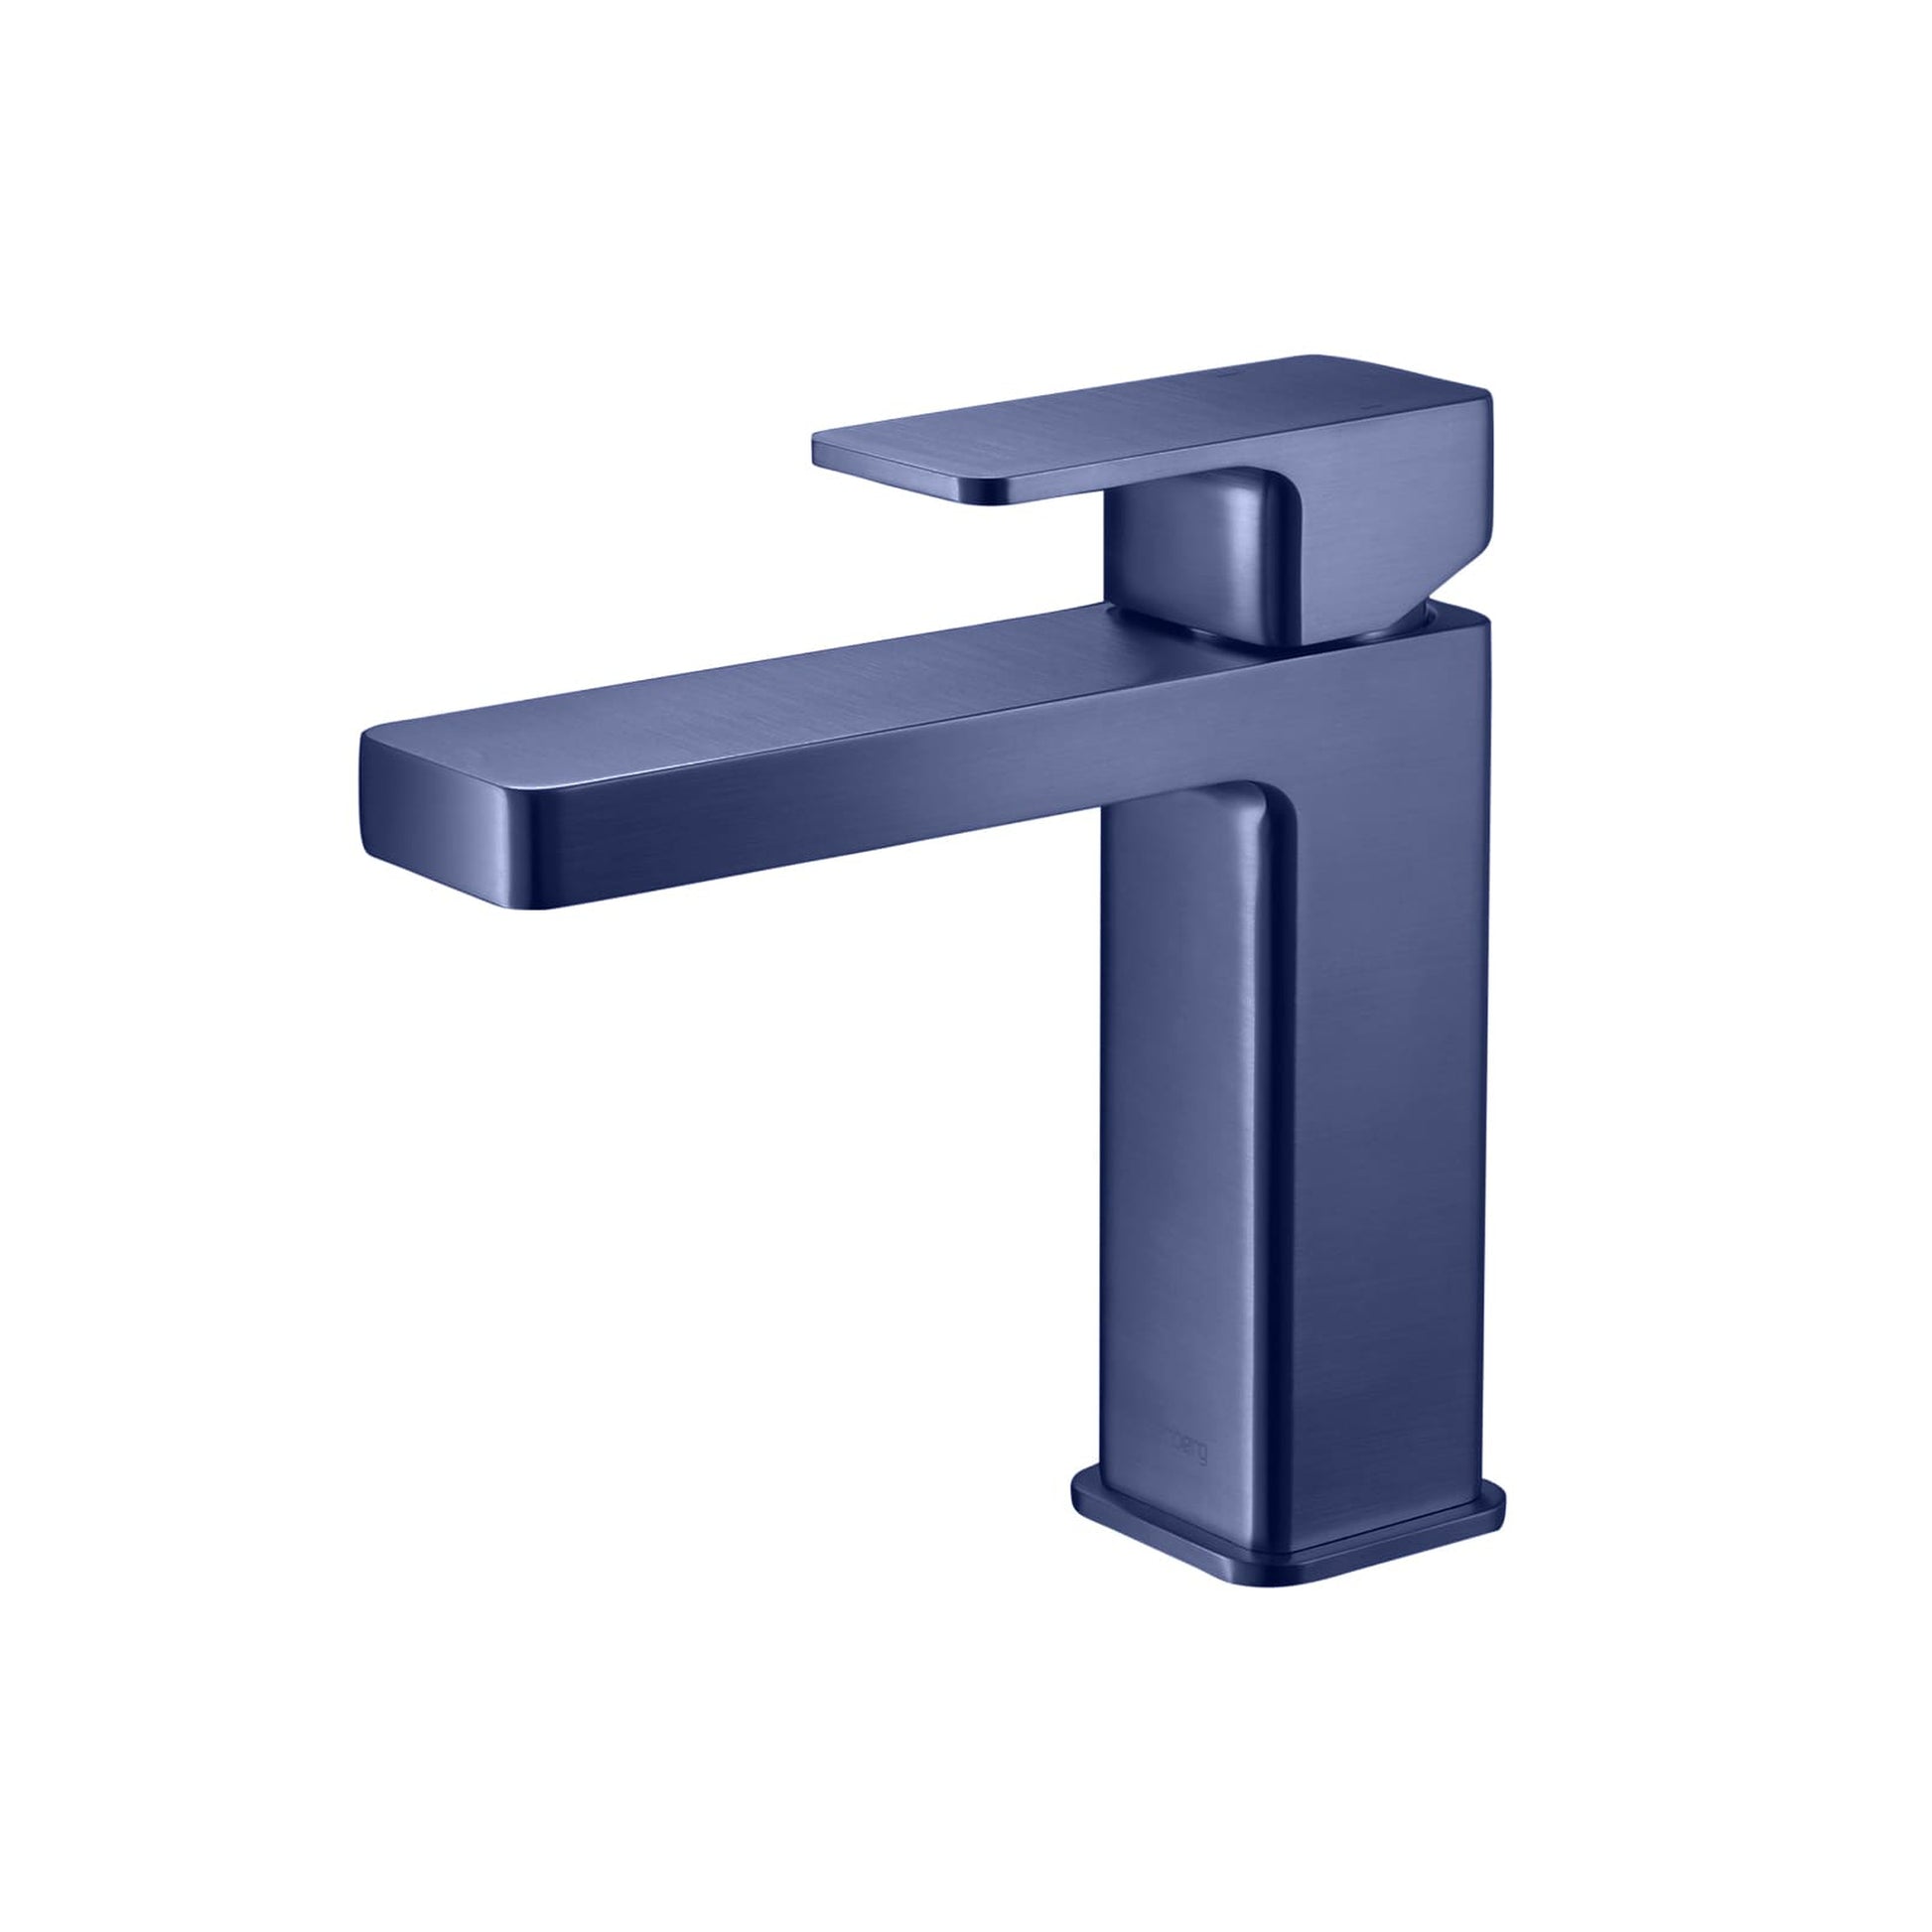 Isenberg Serie 196 Single Hole Top Handle Bathroom Faucet in Navy Blue